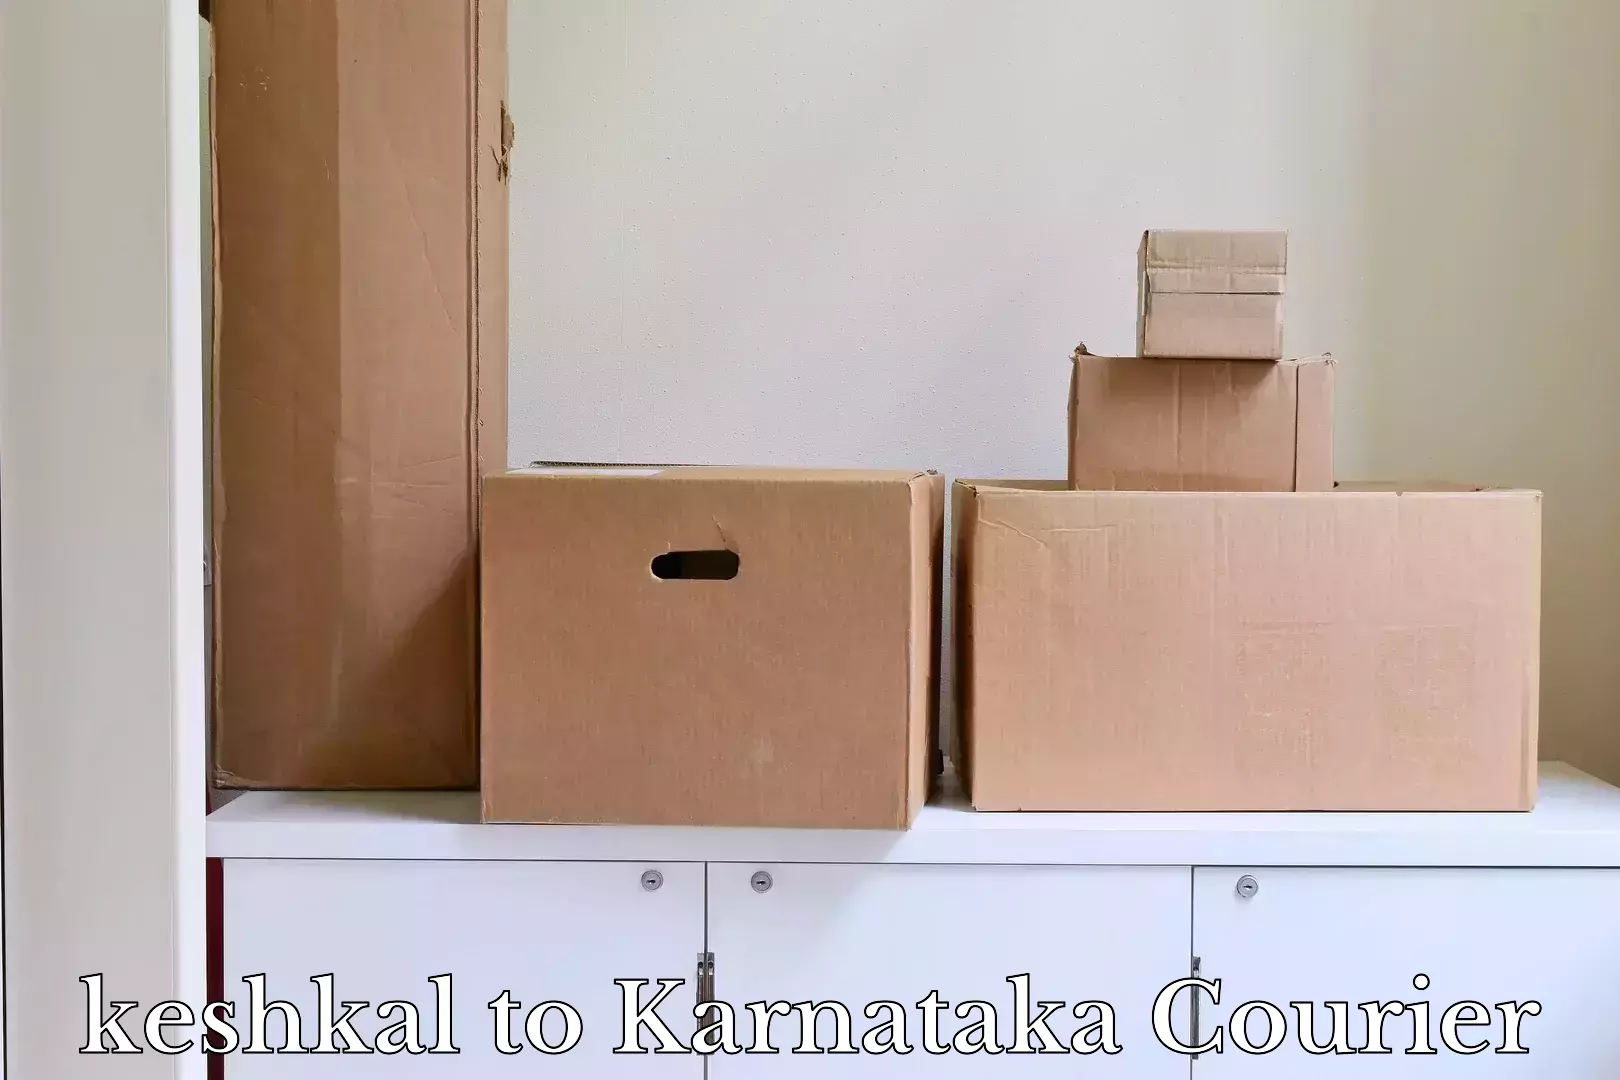 Smart baggage shipping keshkal to Kanjarakatte